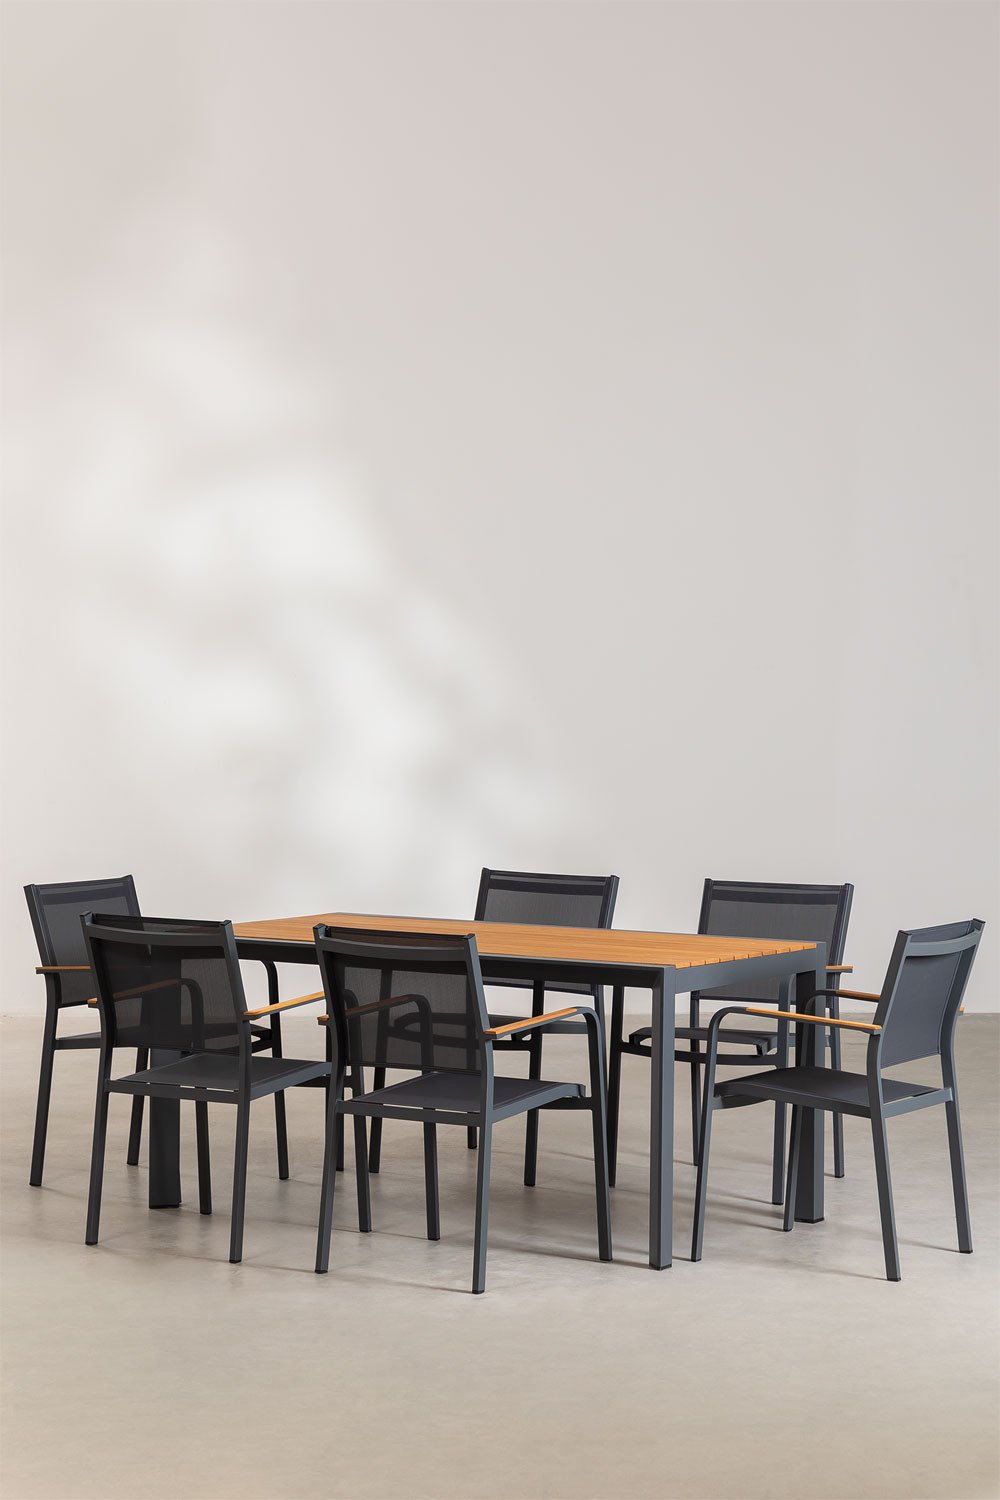 Supreme rechthoekige tafelset (160x90 cm) en 6 Archer tuinstoelen, galerij beeld 1